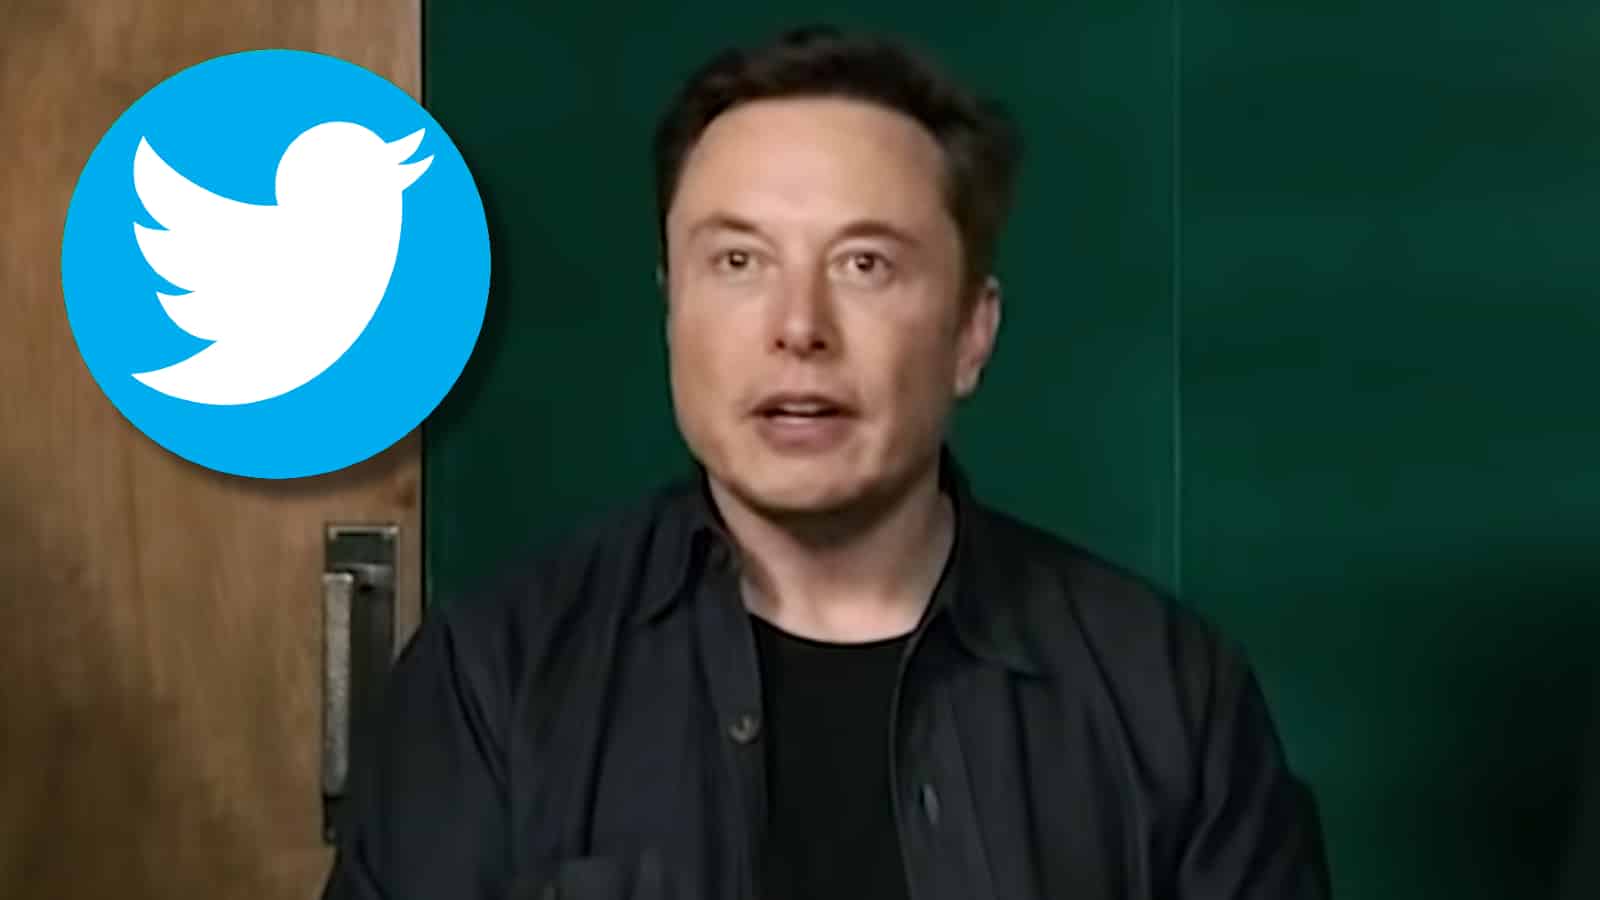 Elon Musk next to the Twitter logo